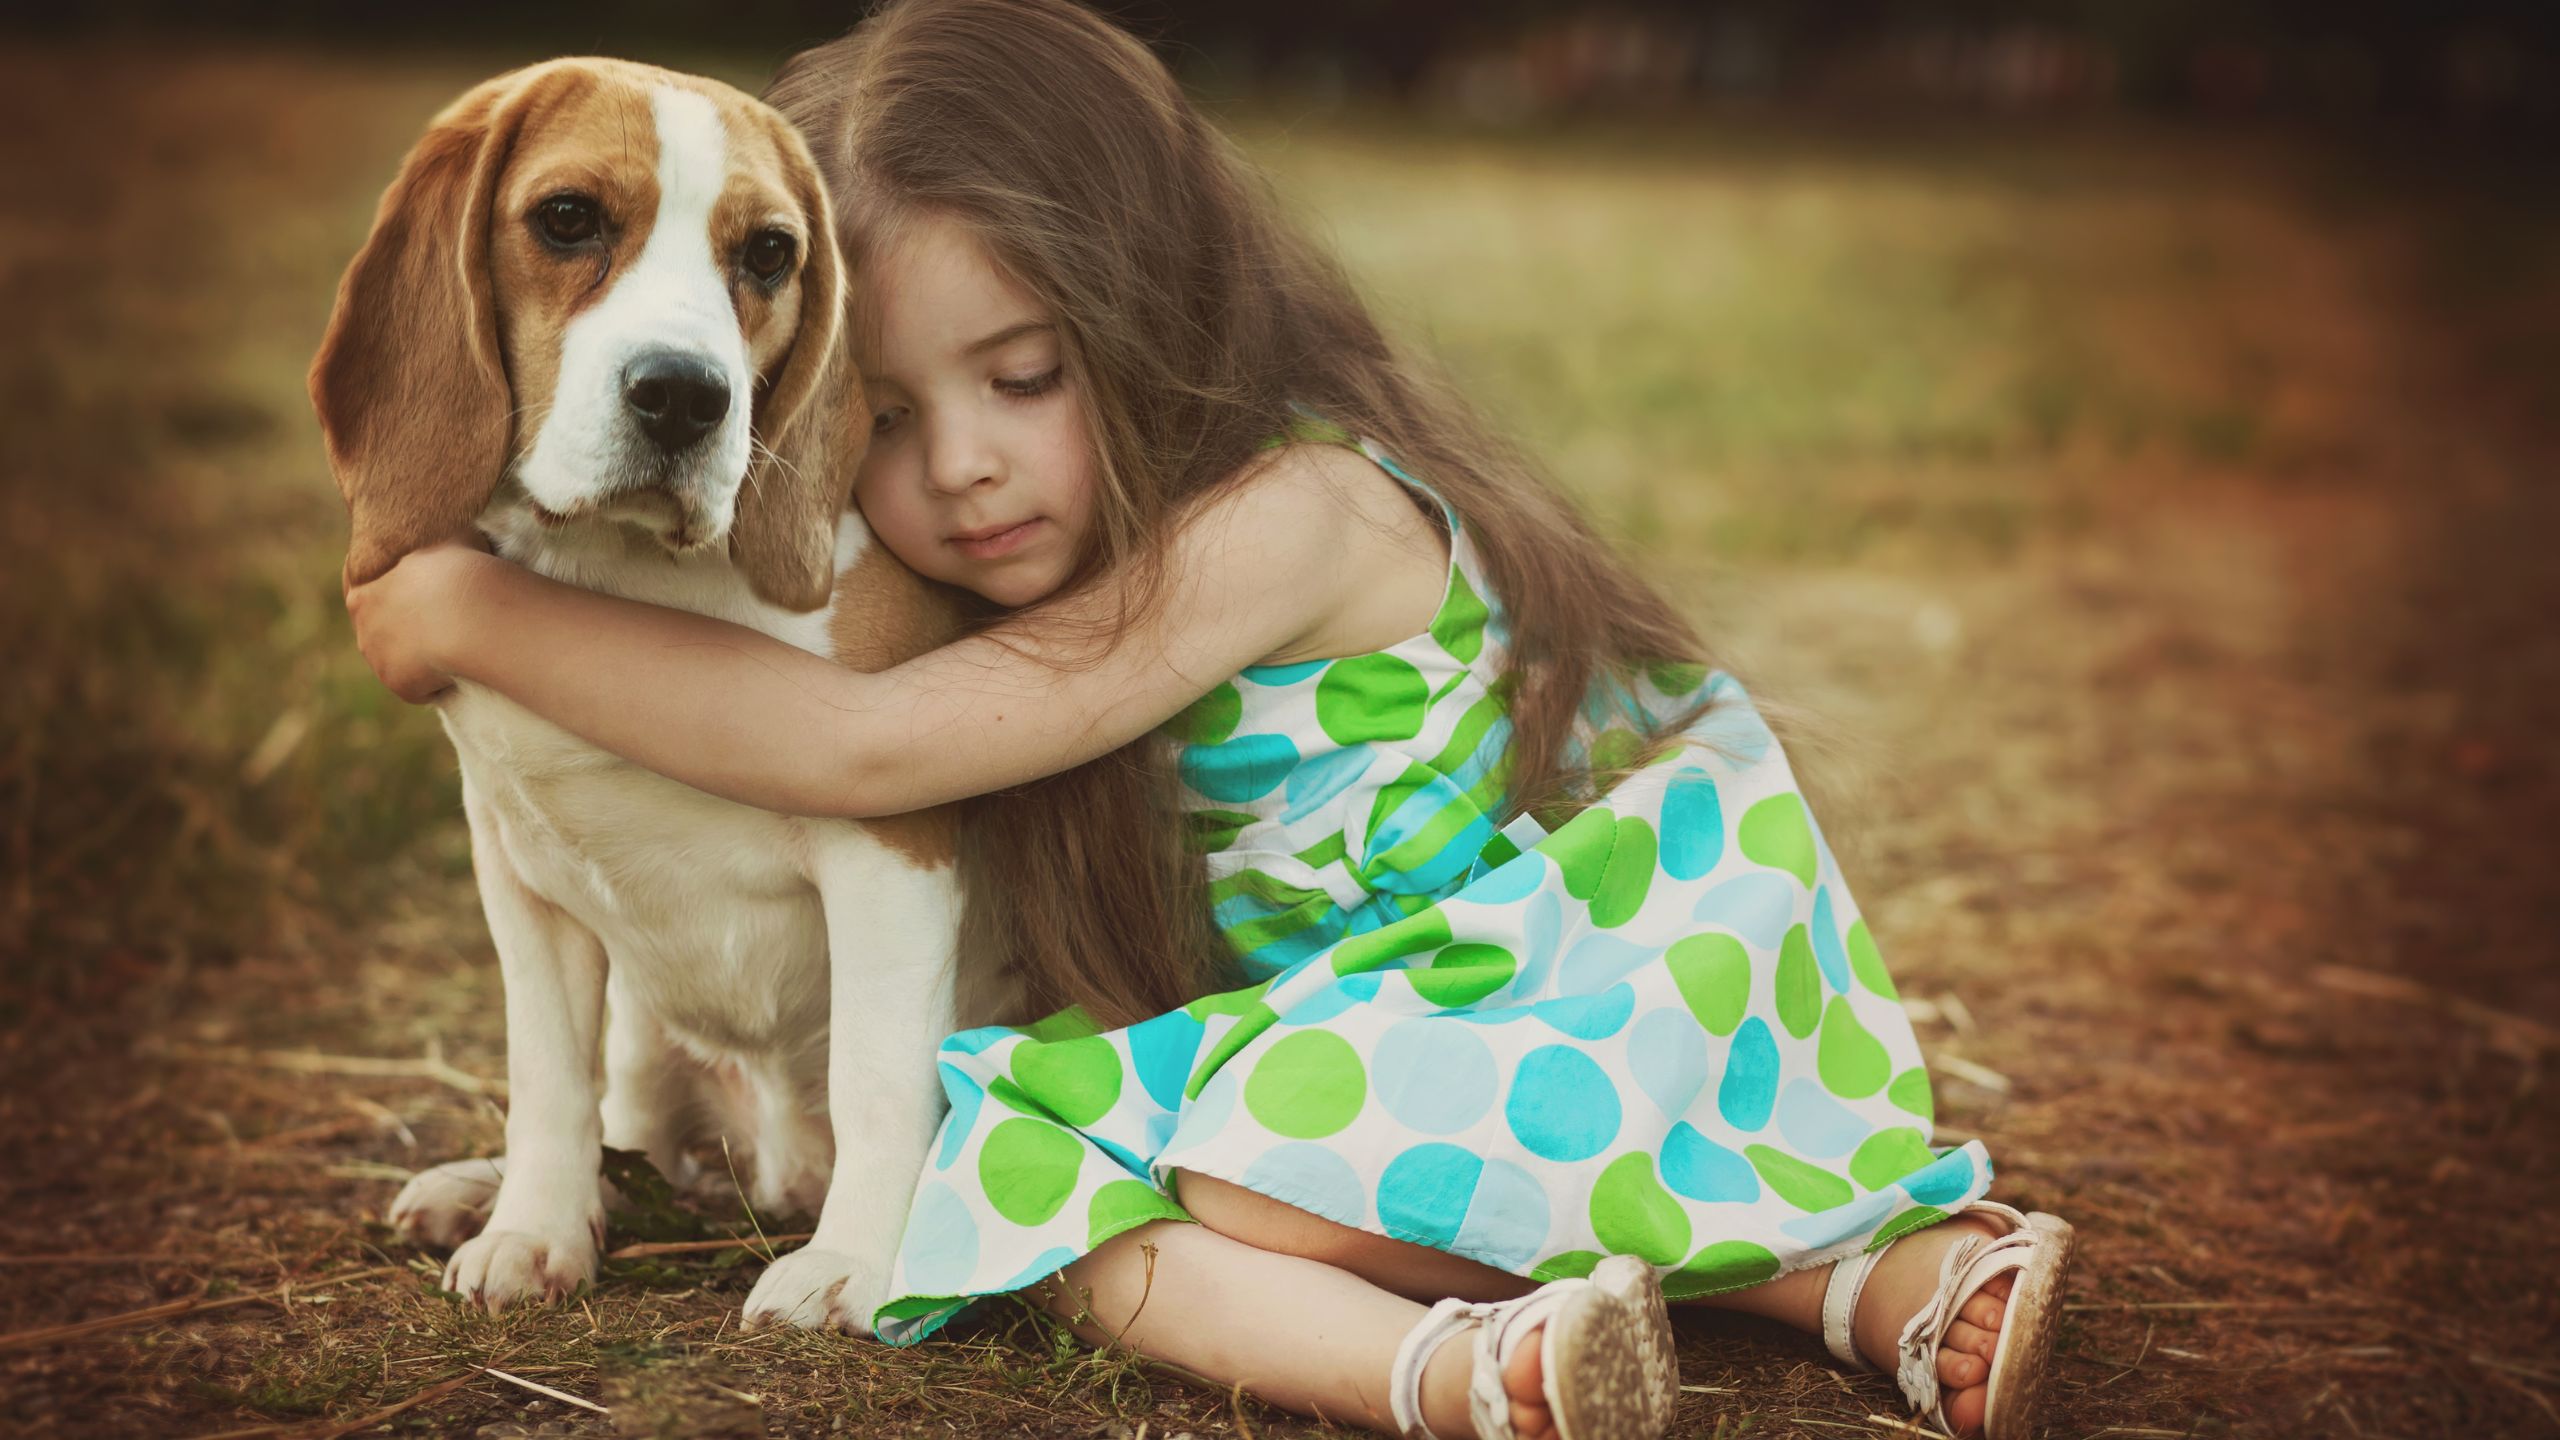 A little girl hugging a dog as her true friend